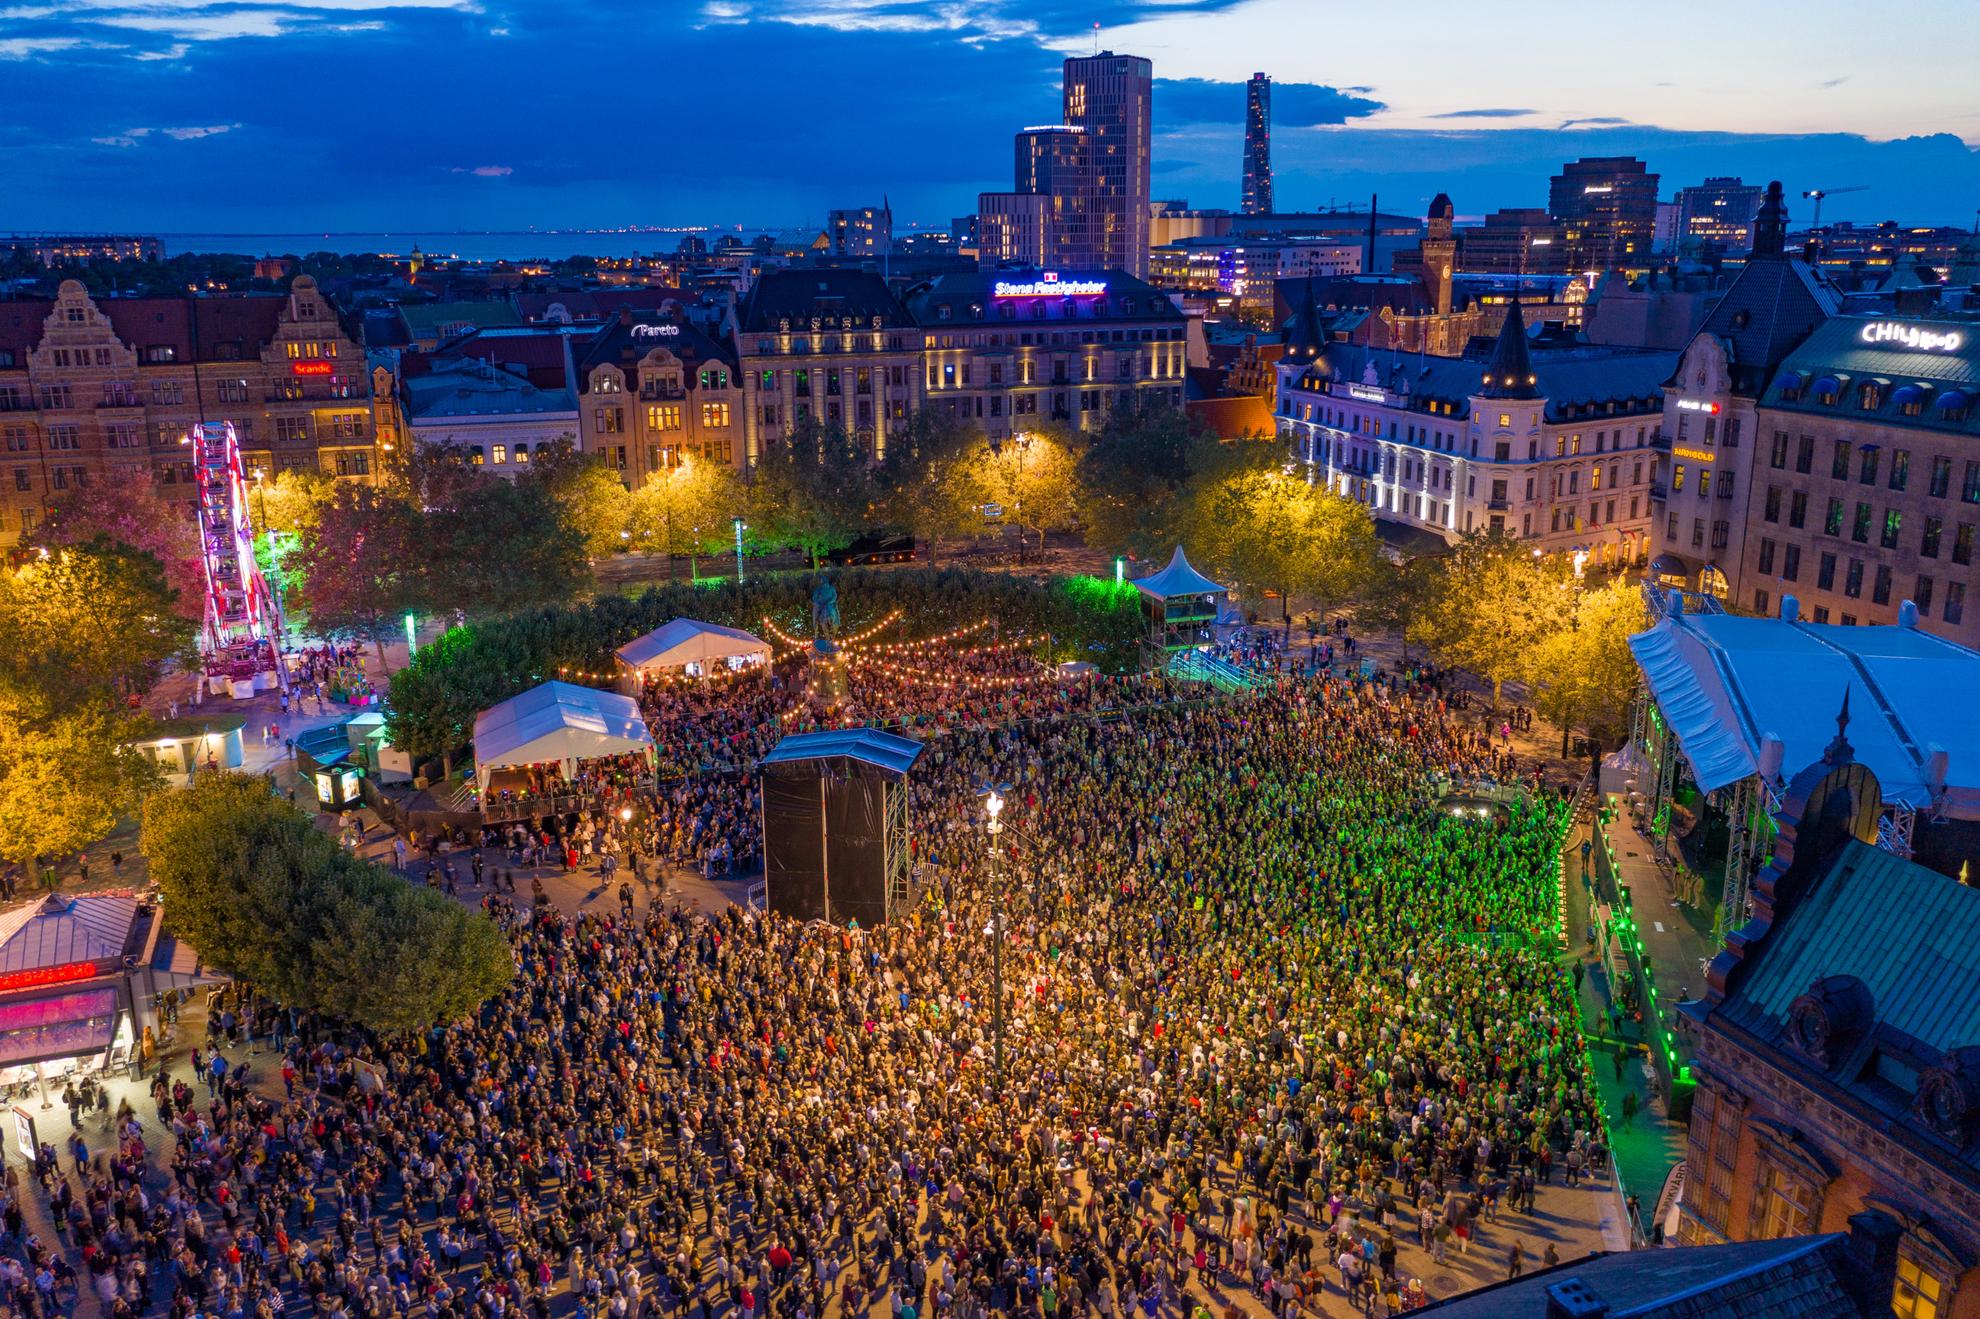 Une image de drone au-dessus du festival de Malmö en soirée, avec des milliers de visiteurs devant une grande scène.